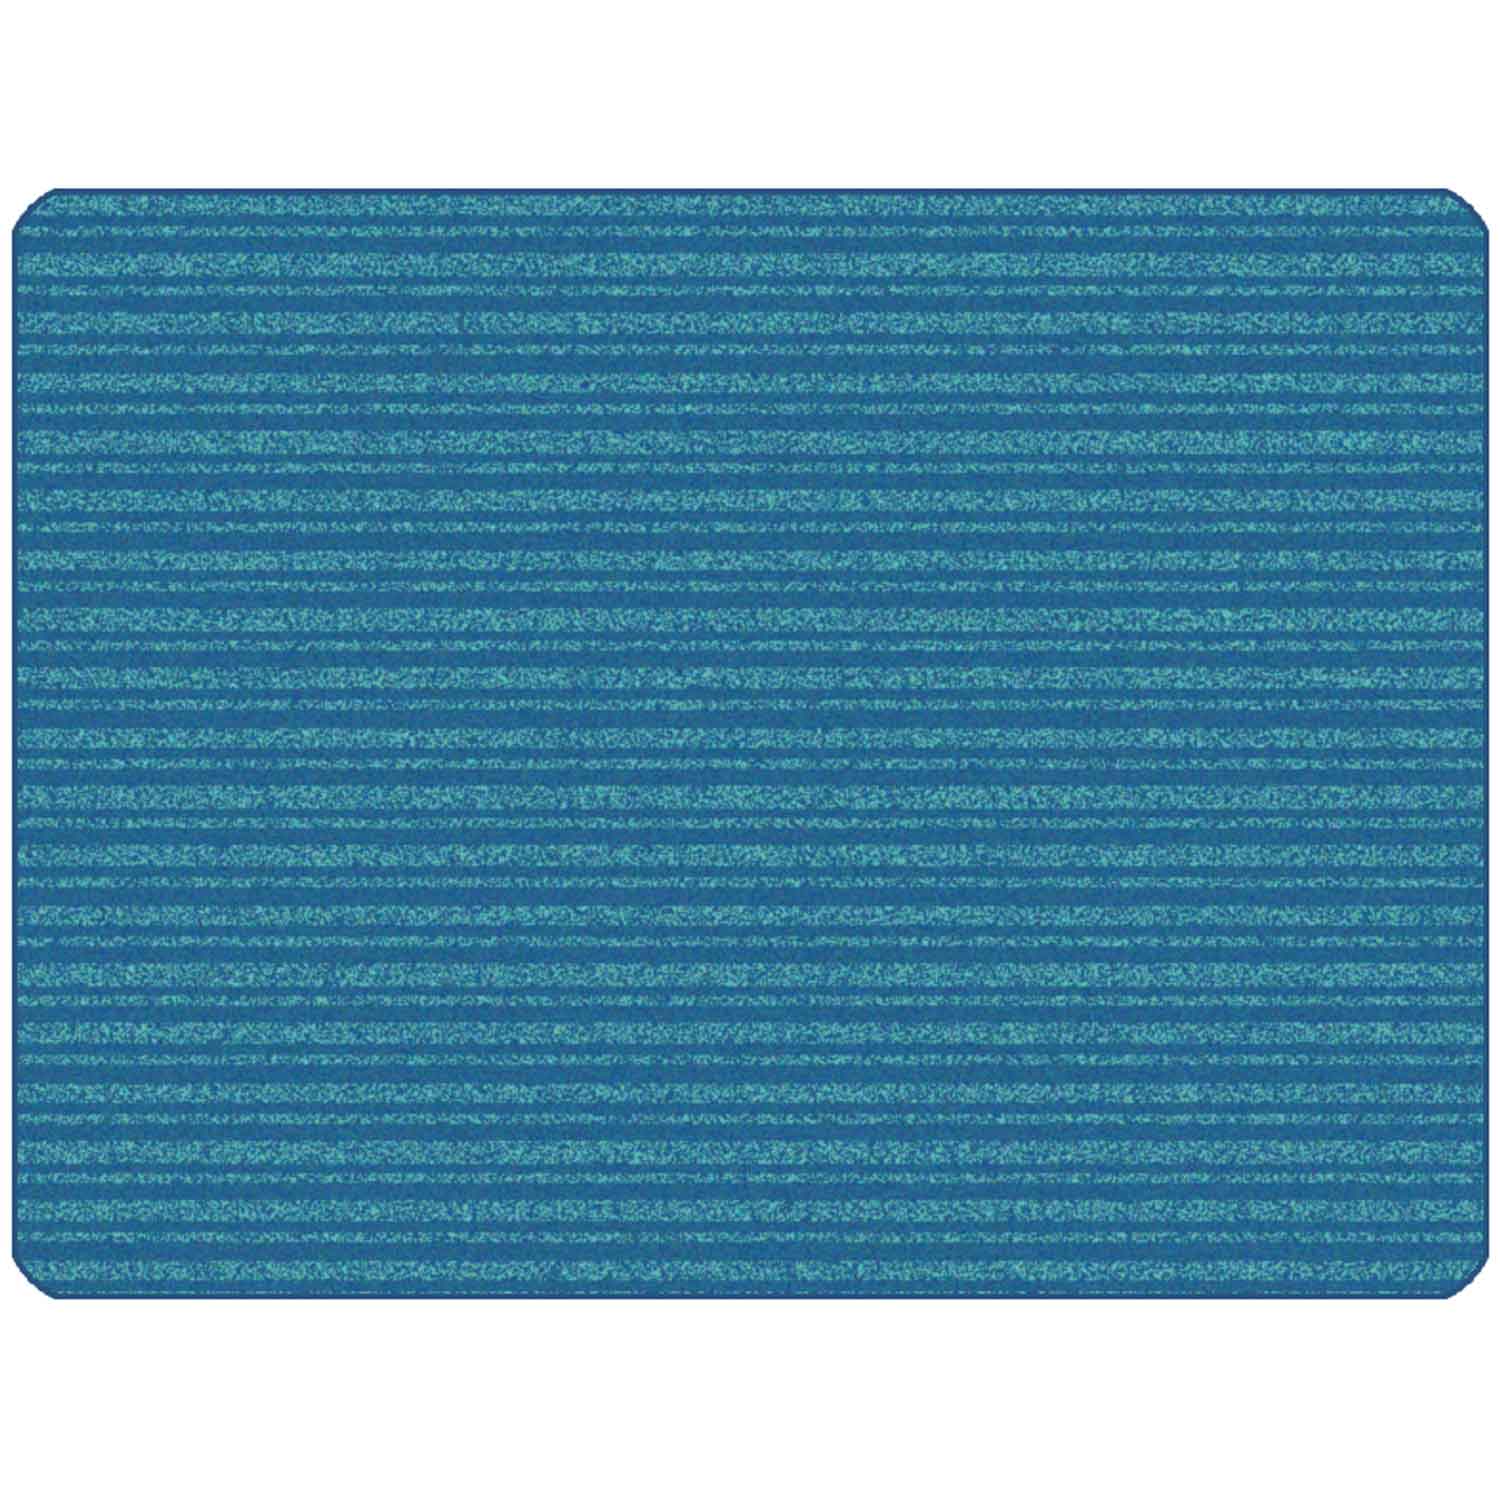 KIDSoft Subtle Stripes Rug Blue Teal 6' x 9'